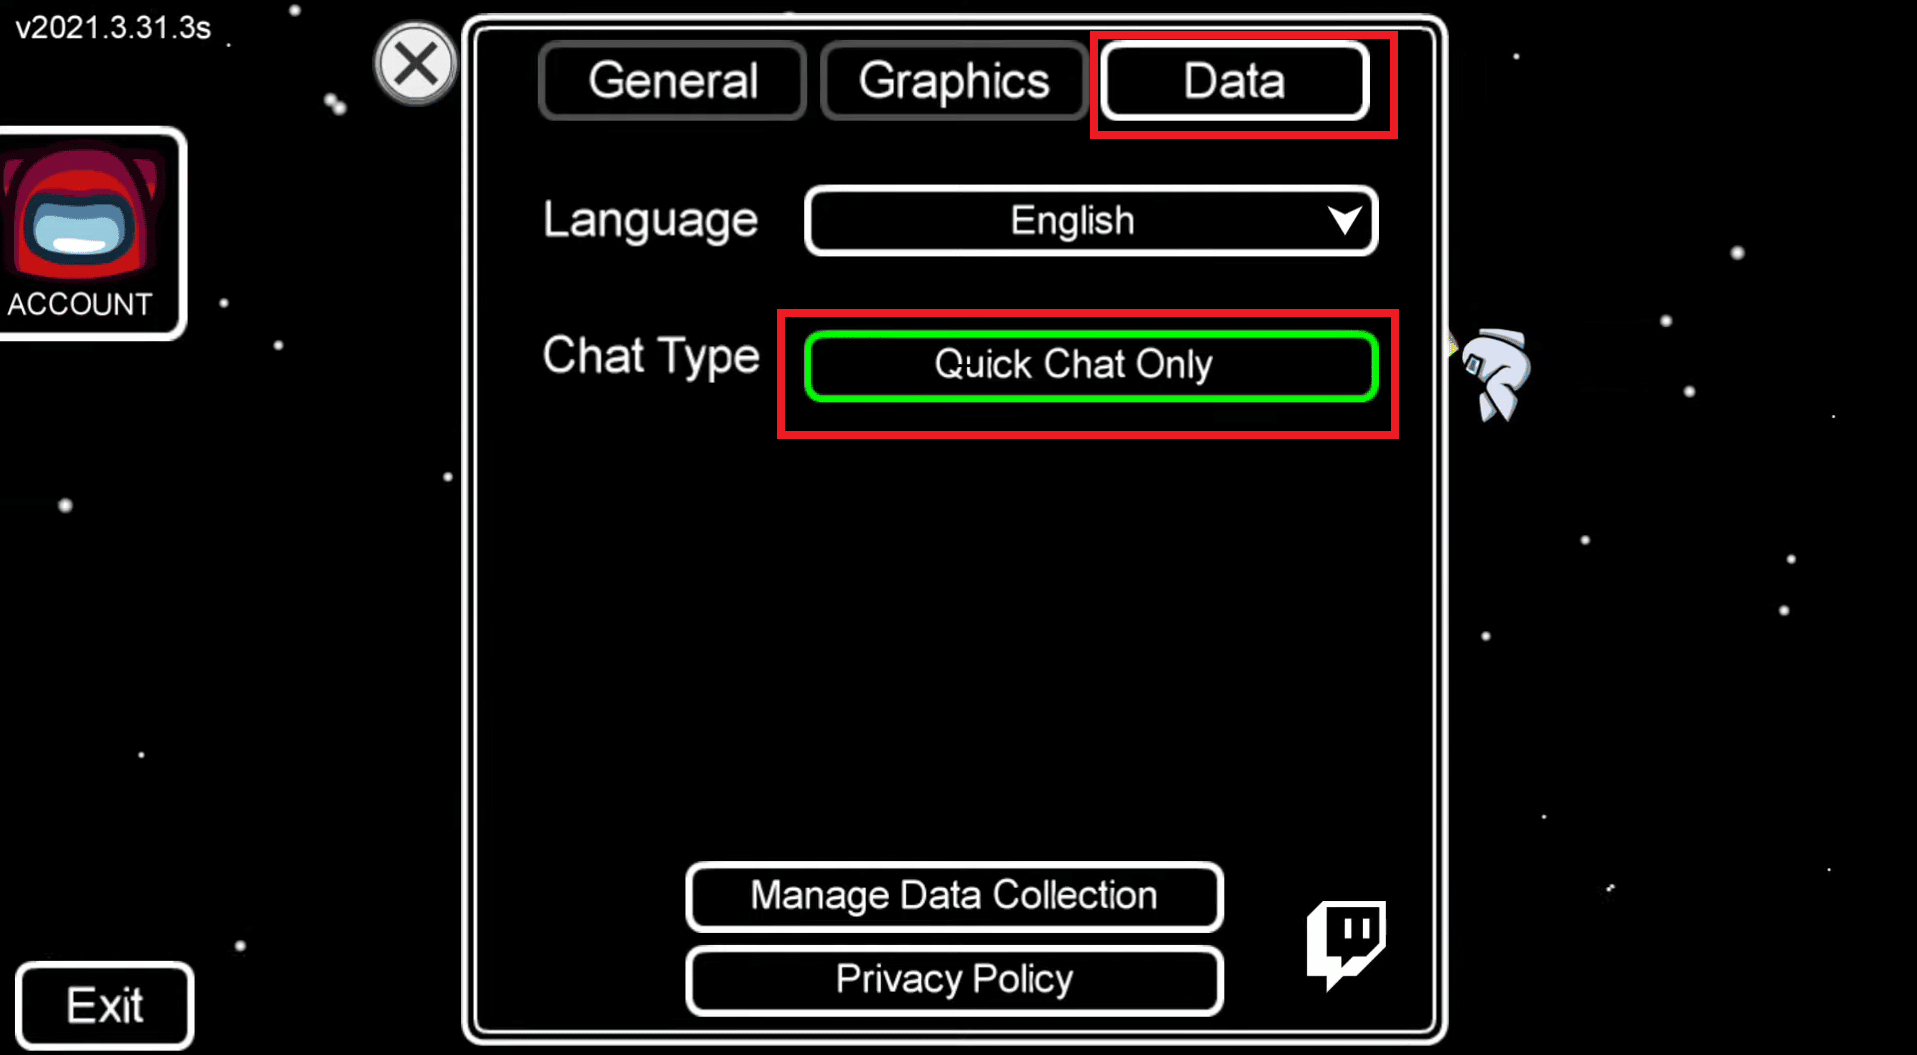 Seleccione la opción Solo chat rápido para habilitar el chat rápido en Among Us